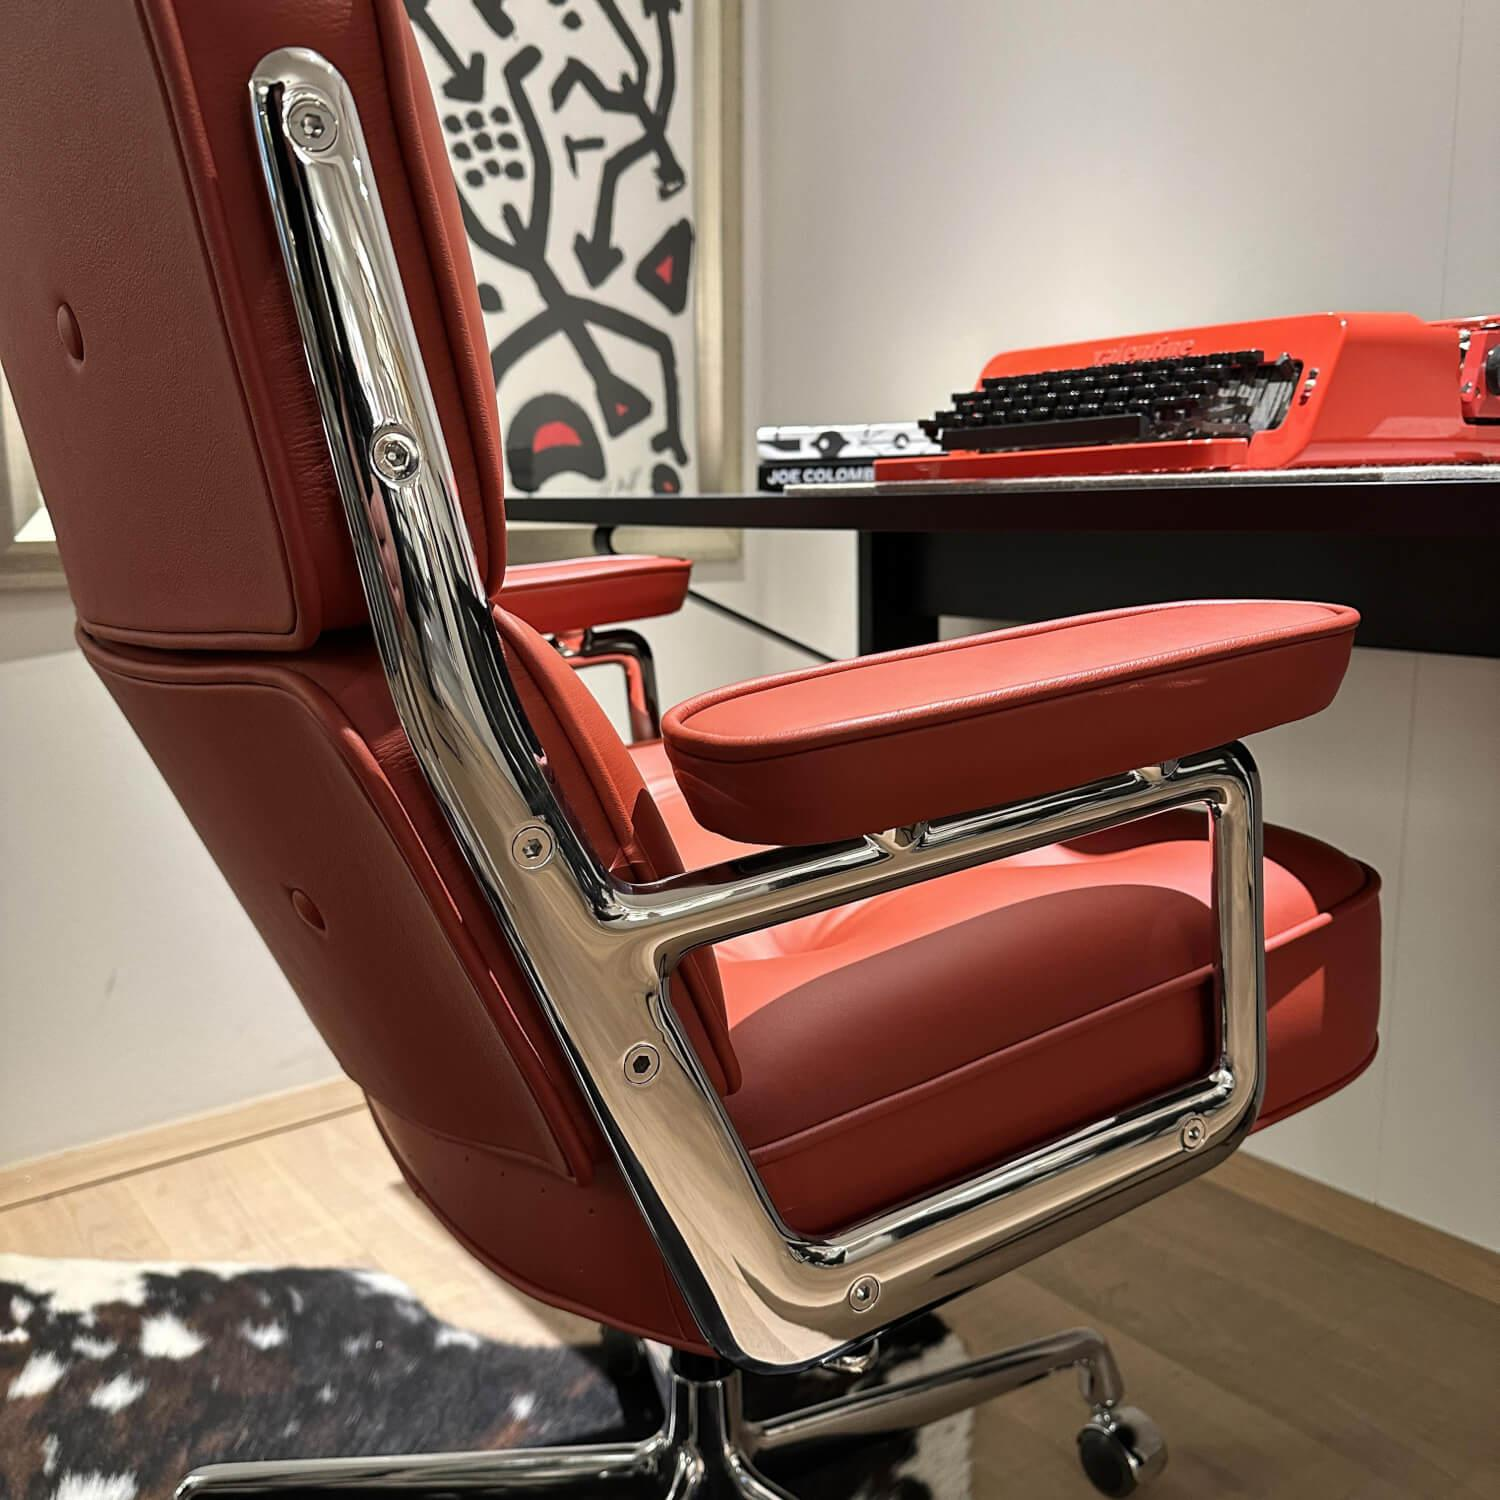 Bürostuhl Lobby Chair ES 104 Leder Red Stone Rot Gestell Aluminum Verchromt Mit Weichen Rollen